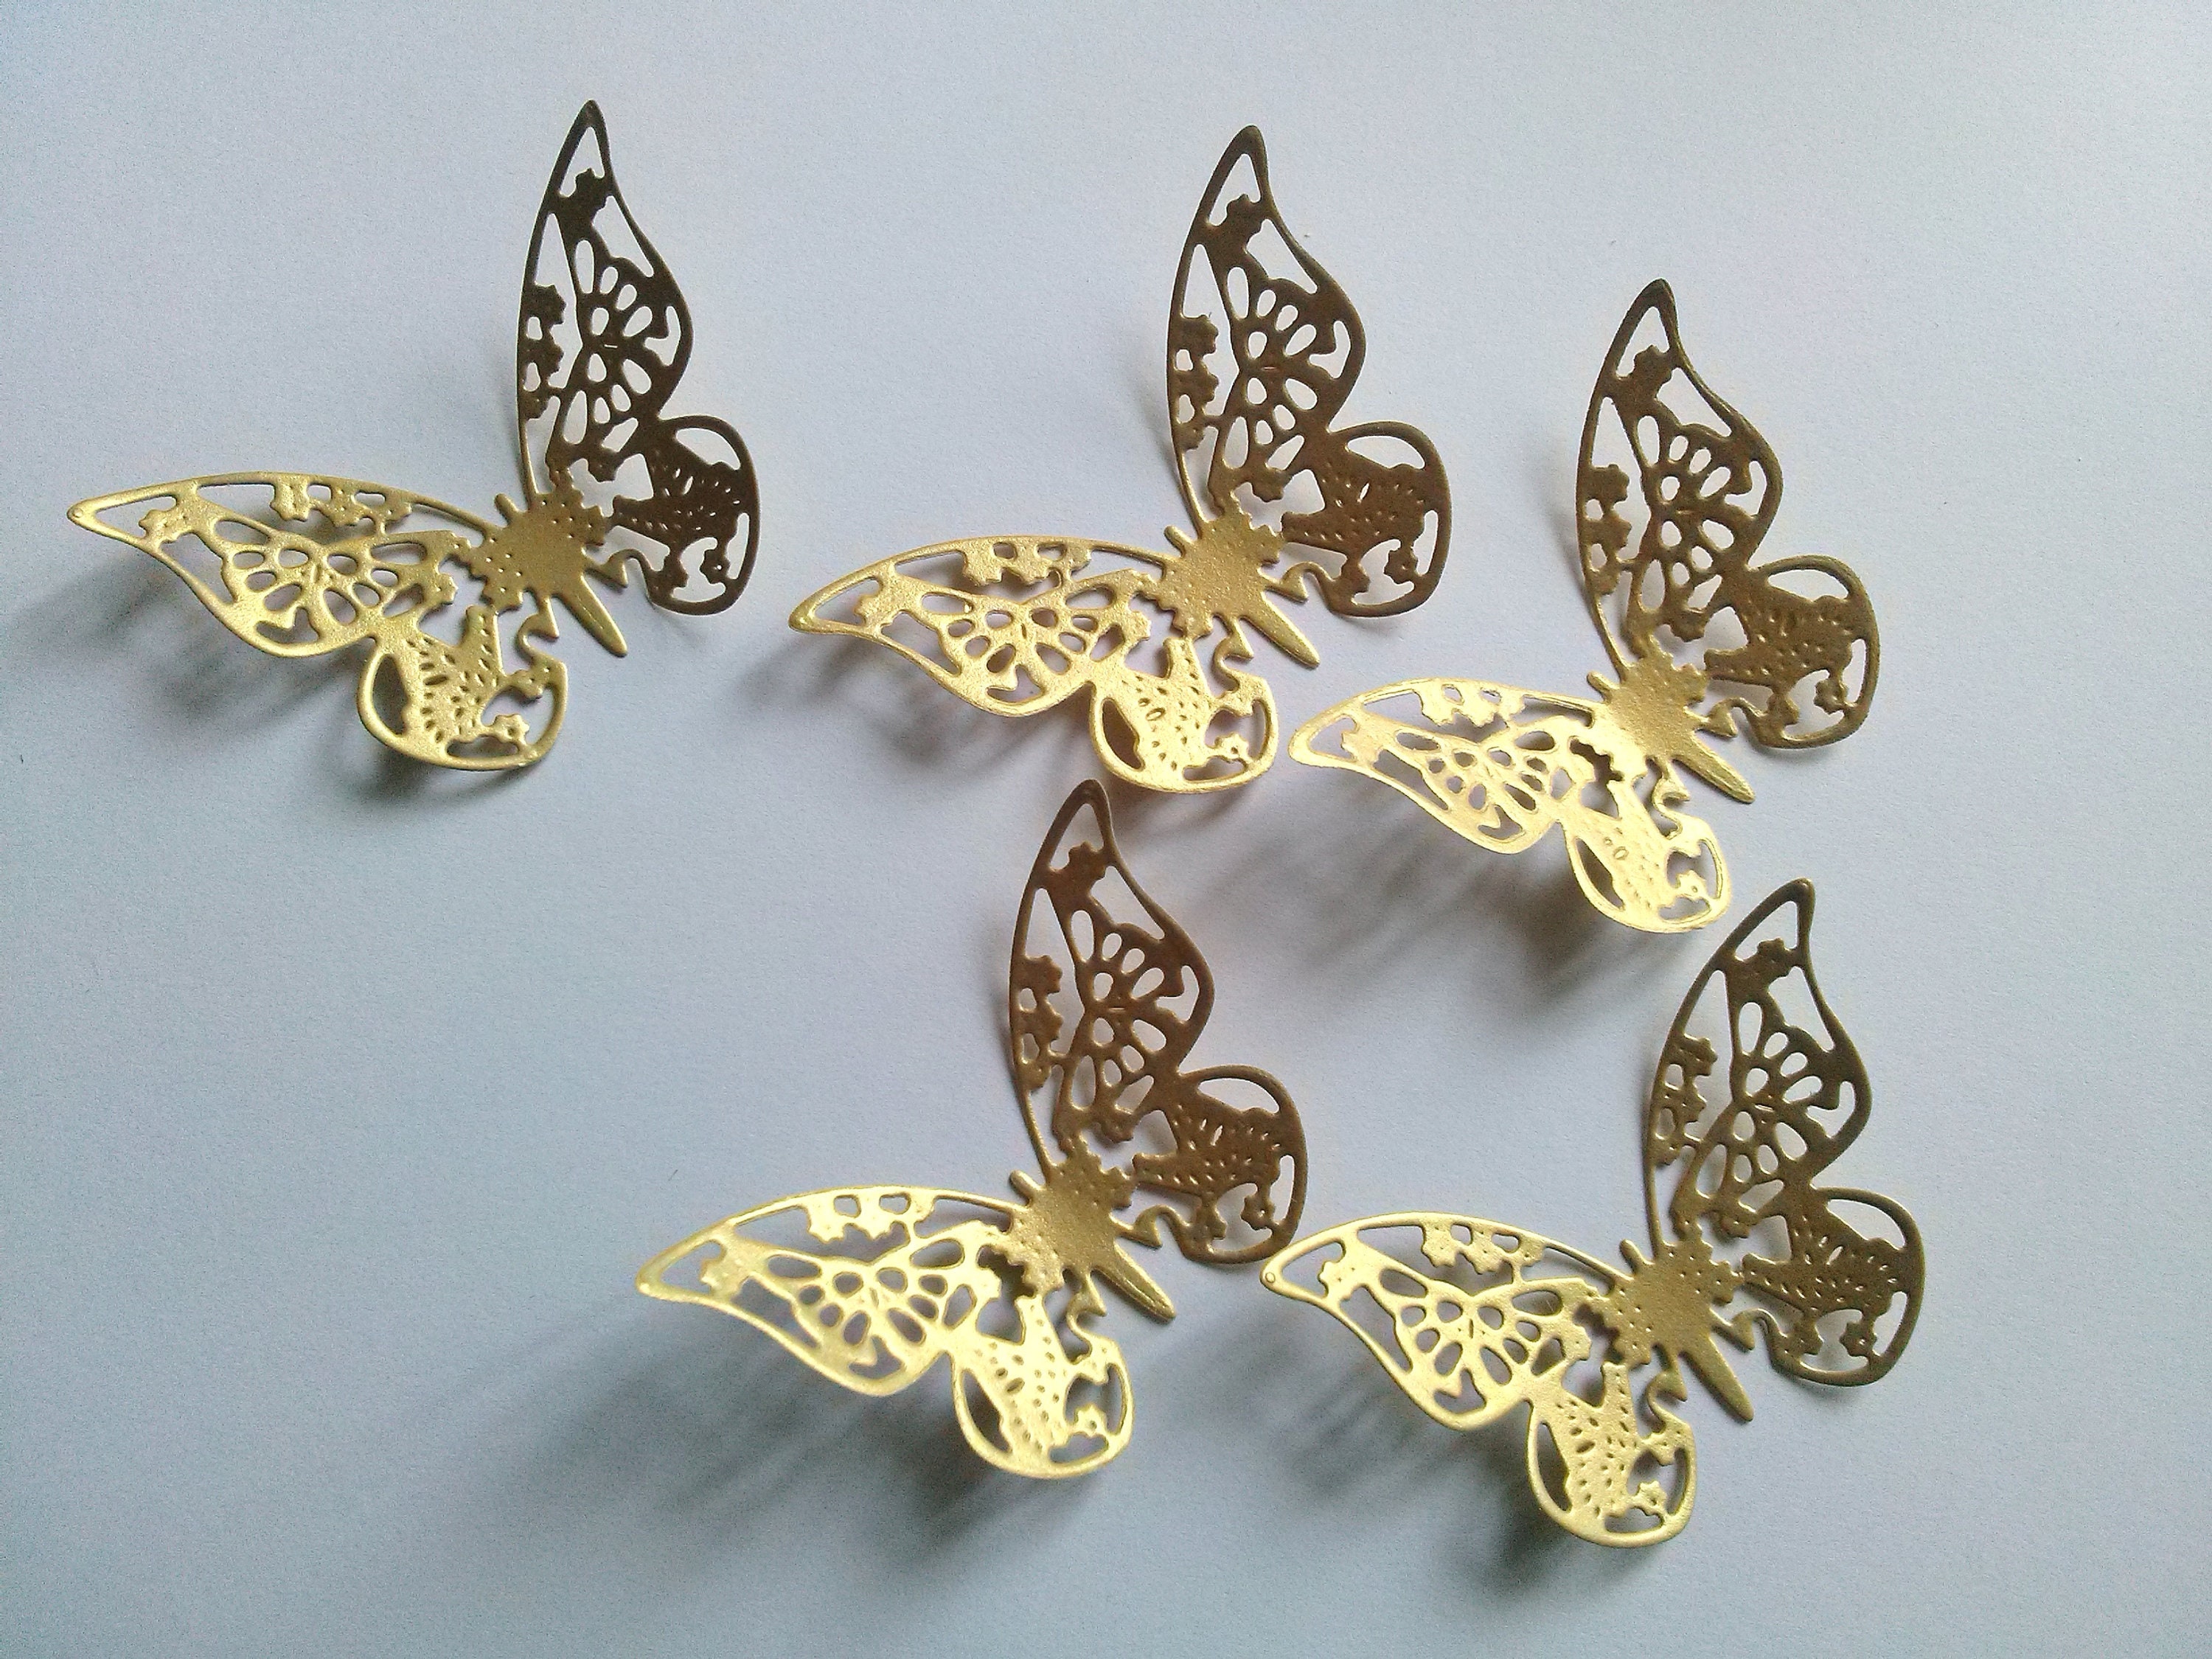 16 Gold Butterfly Wall Decor, Gold Butterfly Wedding Decoration, Gold  Wedding Butterflies, Gold Paper Butterflies 